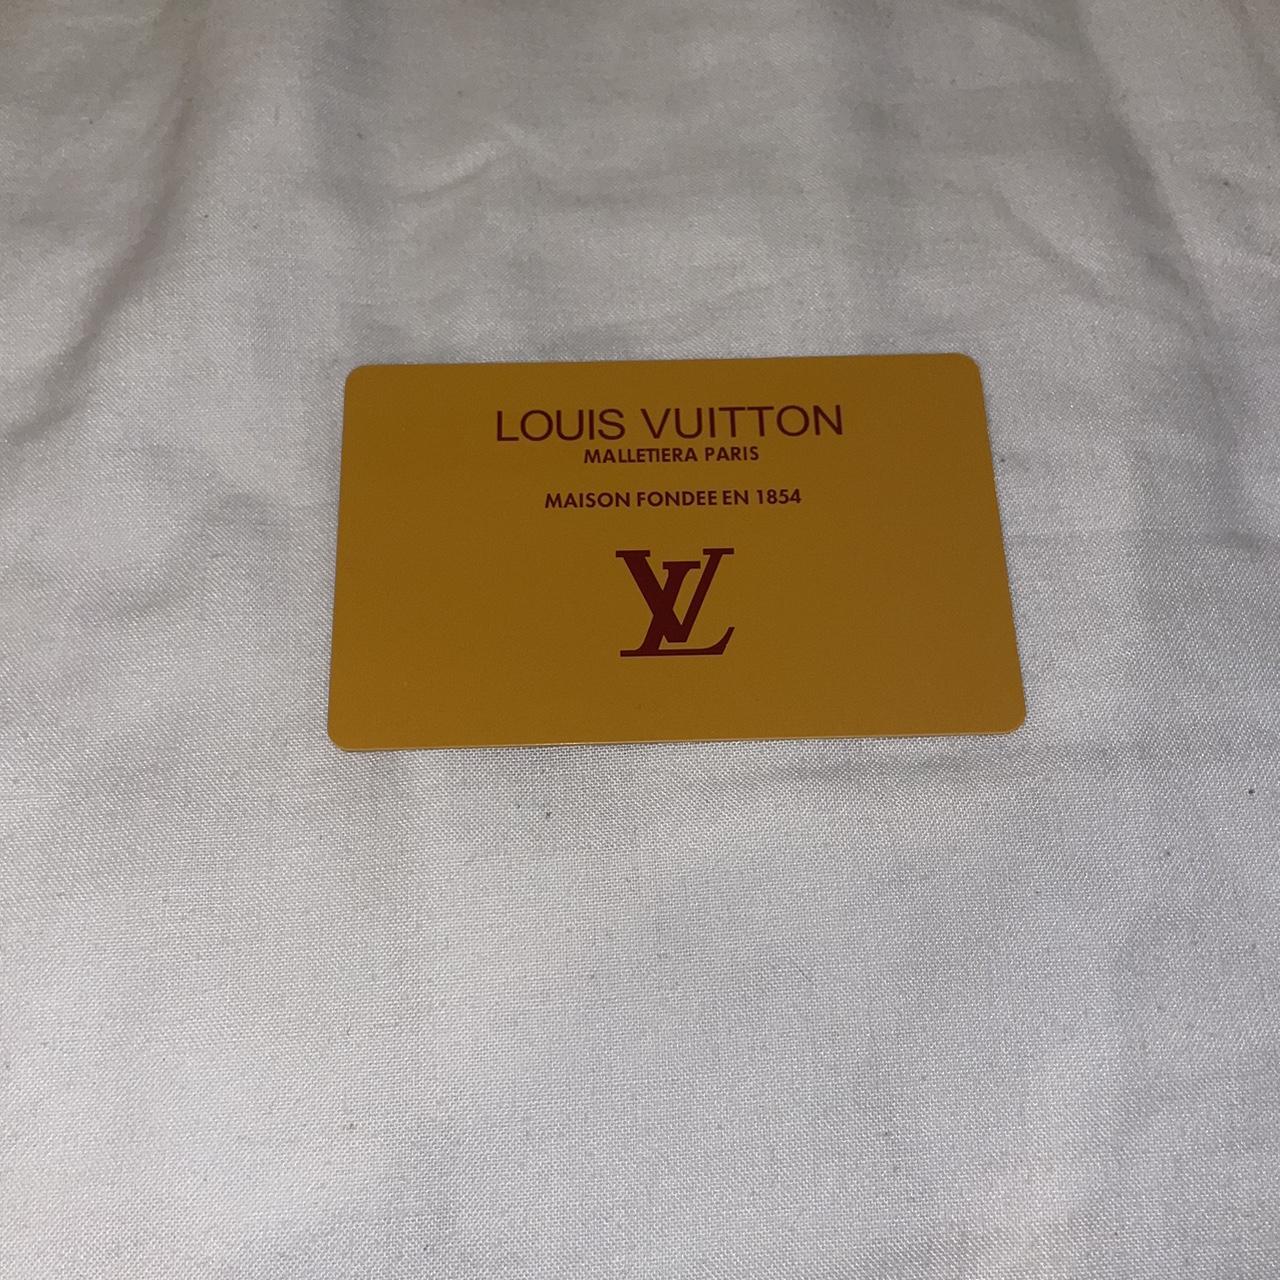 Rare vintage Louis Vuitton Kisslock glasses - Depop